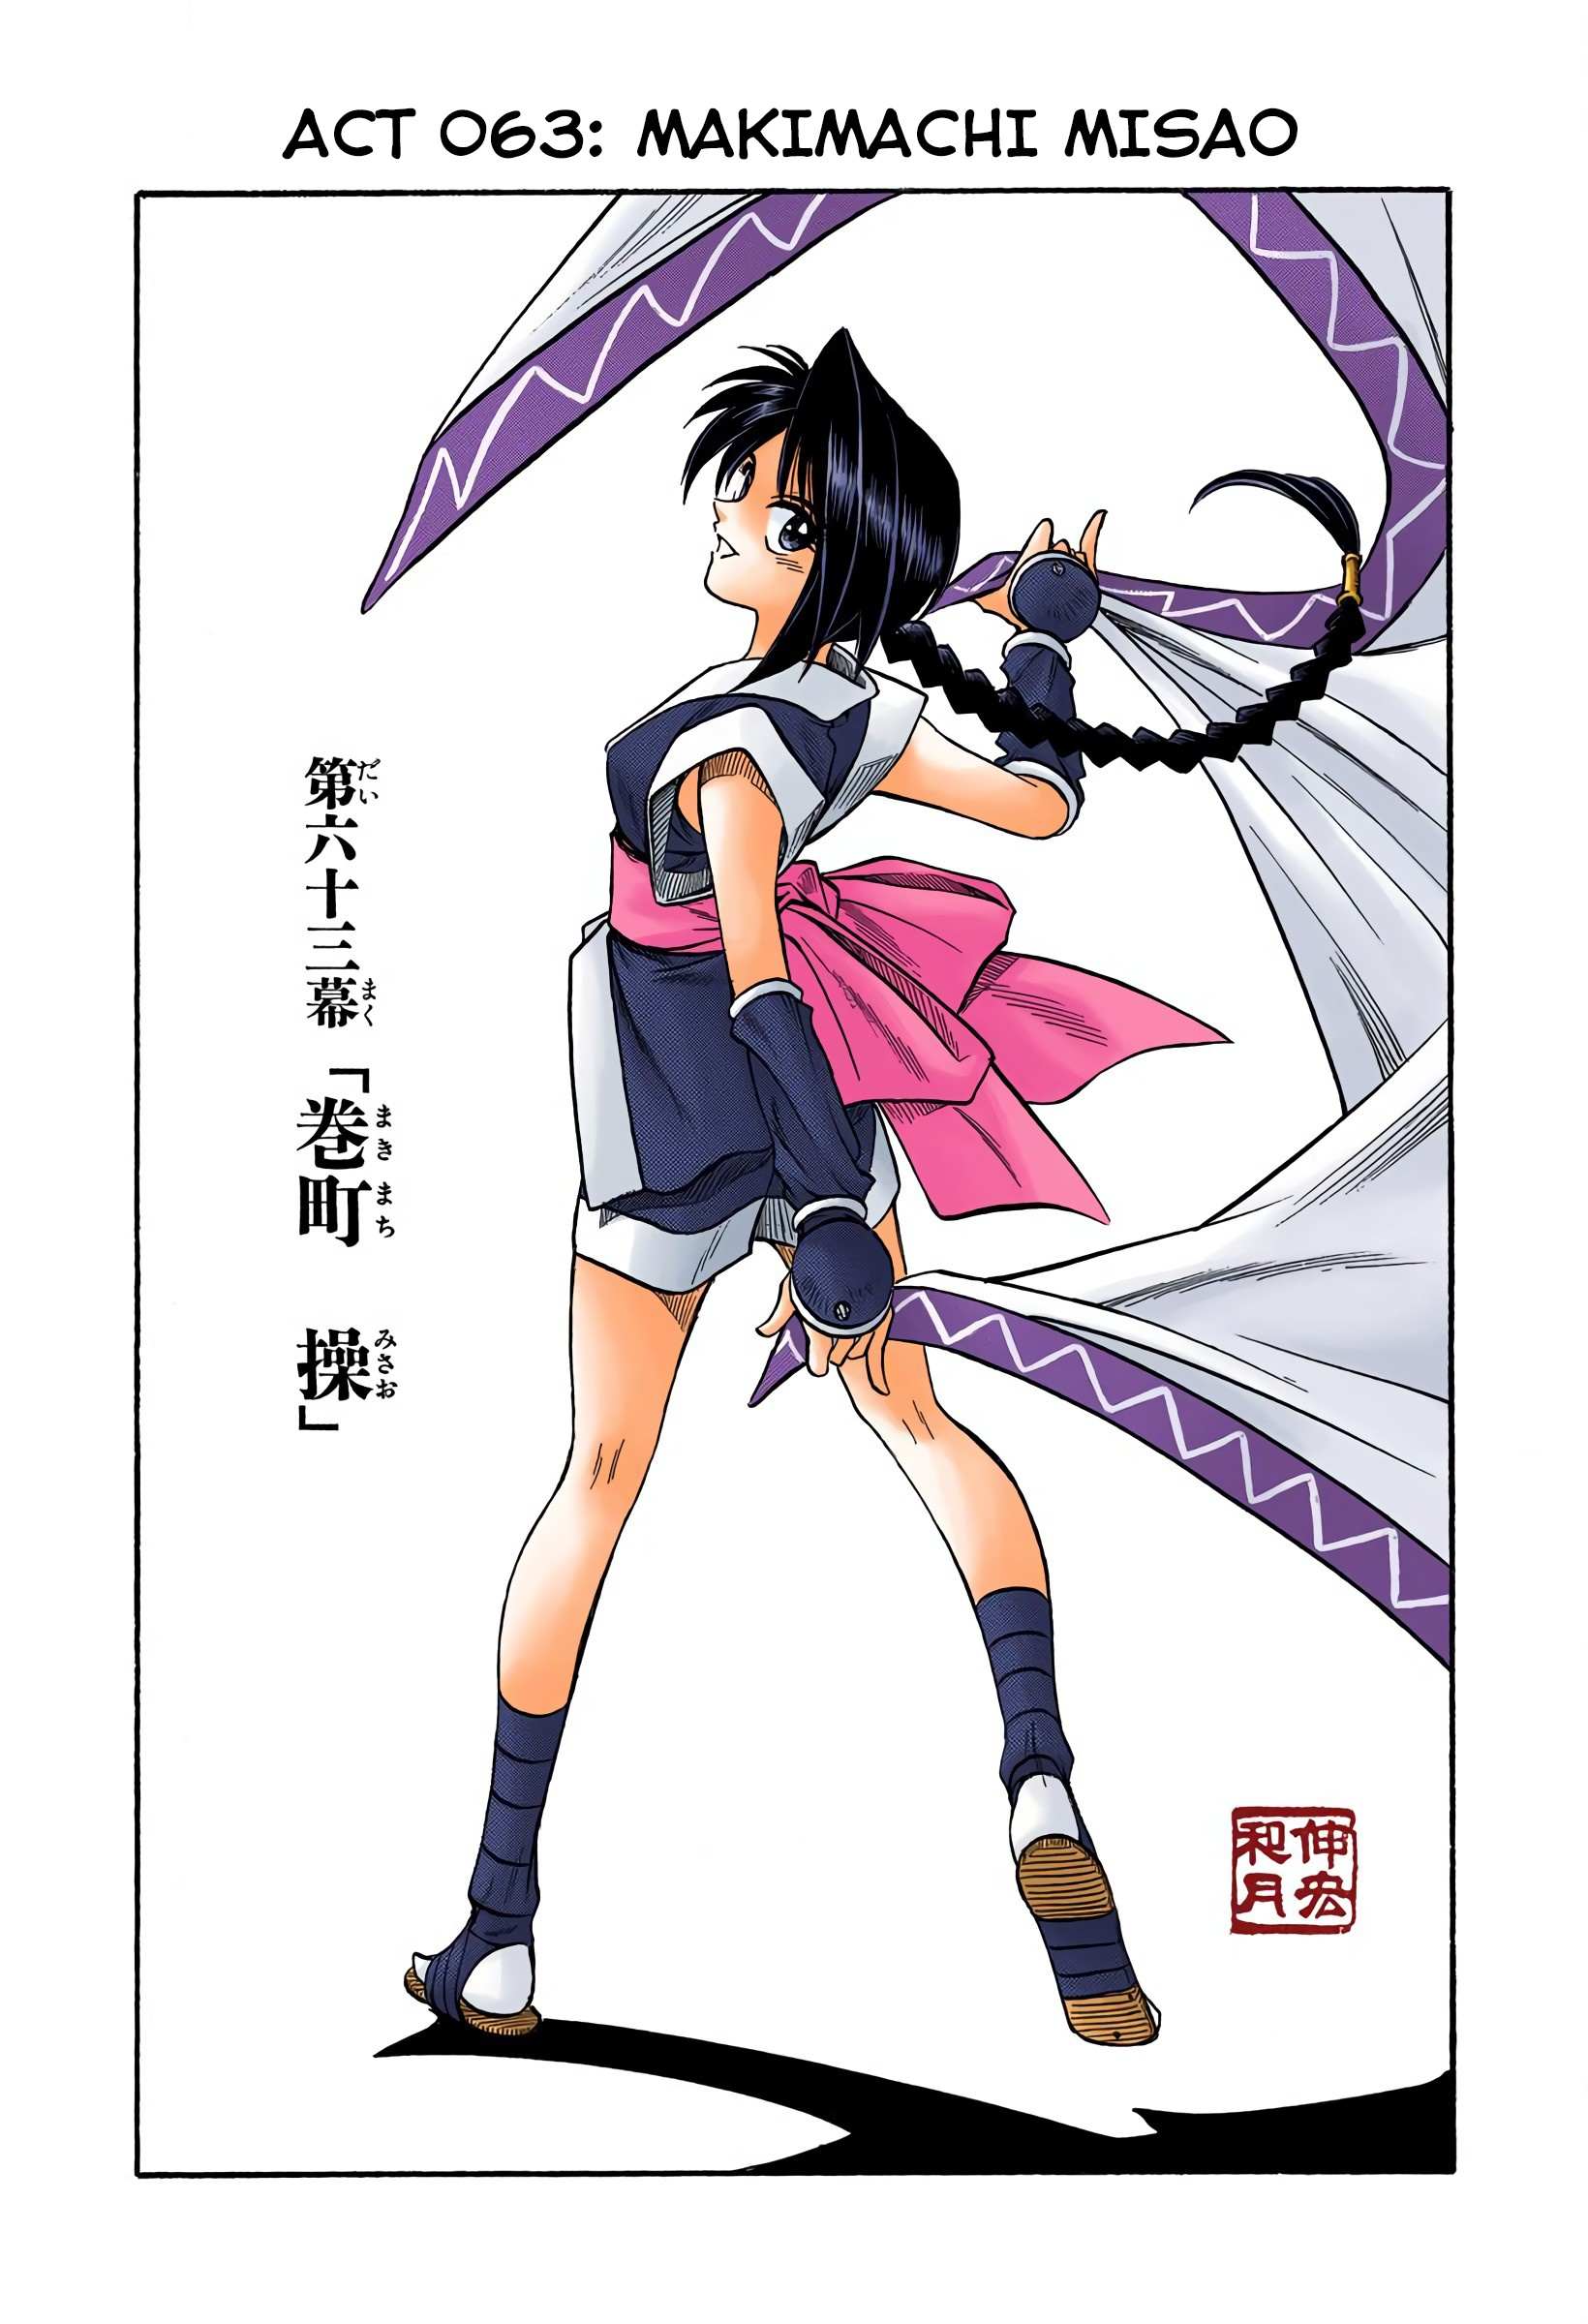 Rurouni Kenshin: Meiji Kenkaku Romantan - Digital Colored - chapter 63 - #1